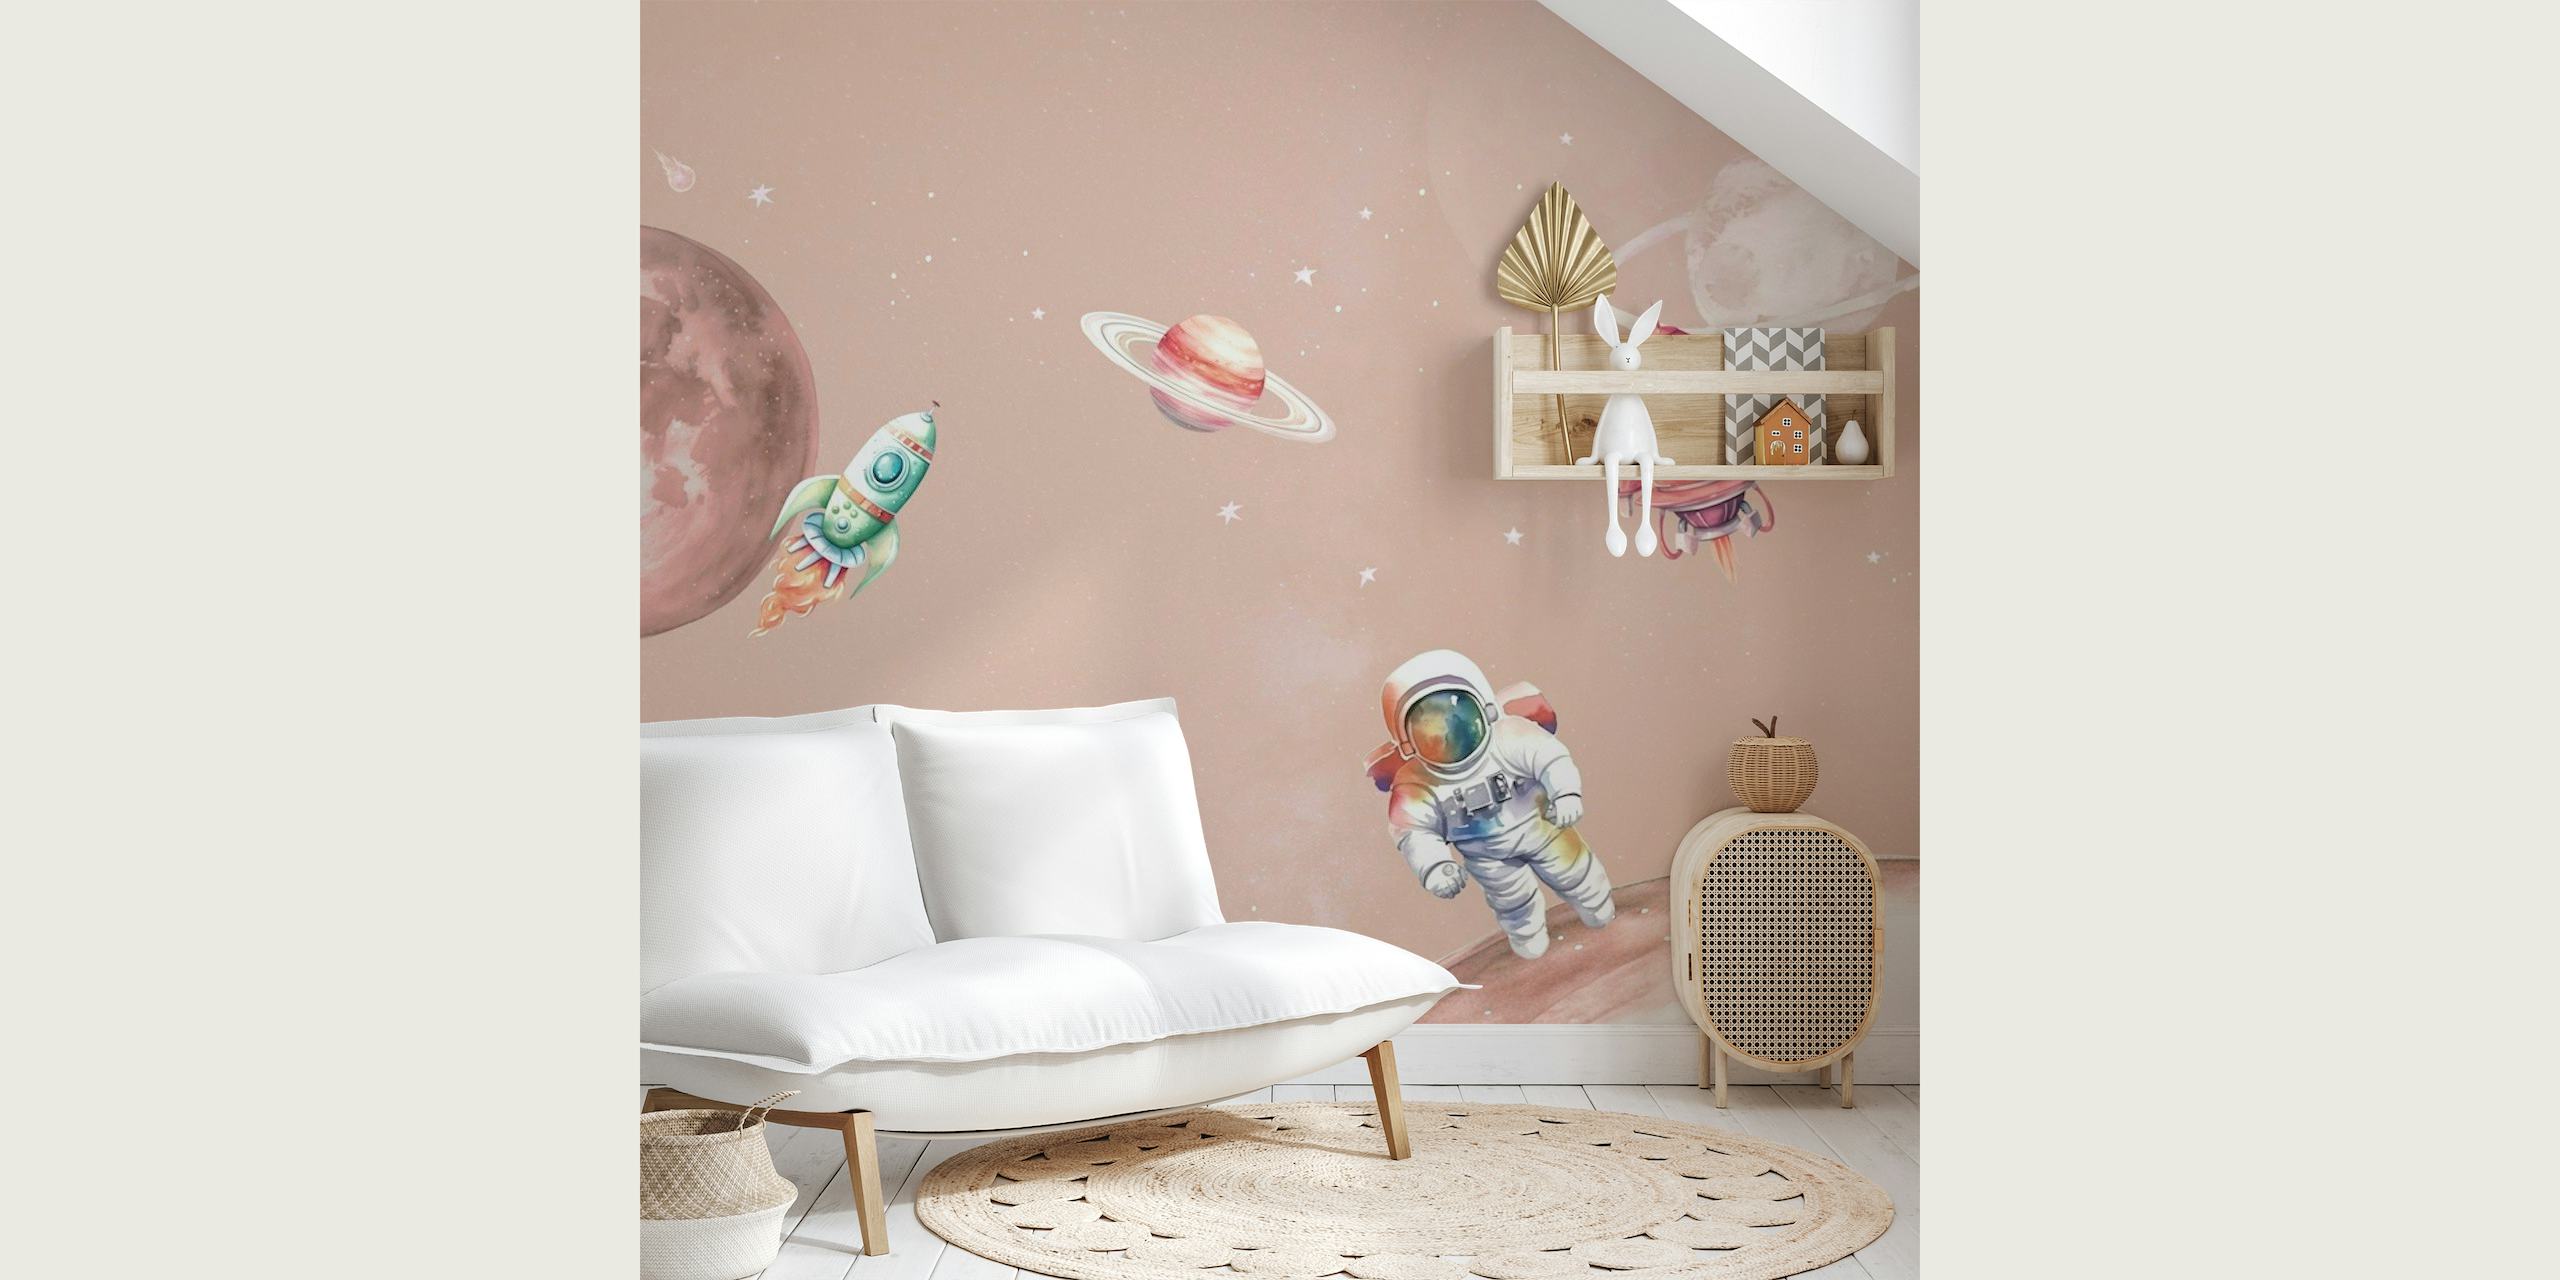 Carta da parati con scena spaziale in stile cartone animato con un astronauta, pianeti e astronavi su uno sfondo rosa cipria.